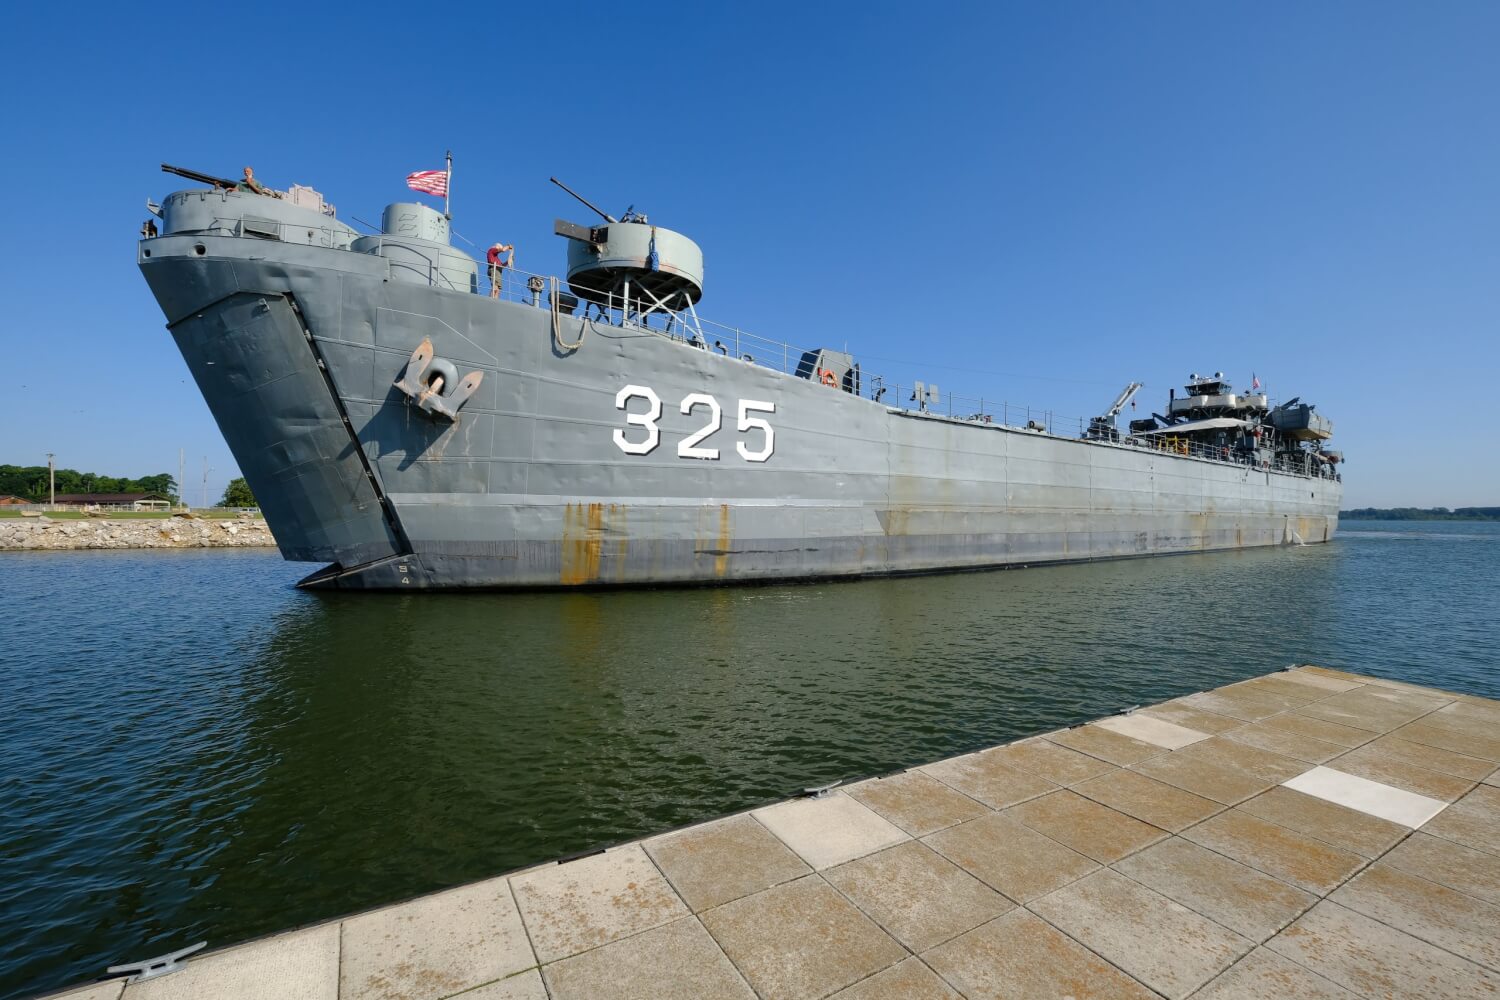 LST 325 Ship Tour ExploreLaCrosse